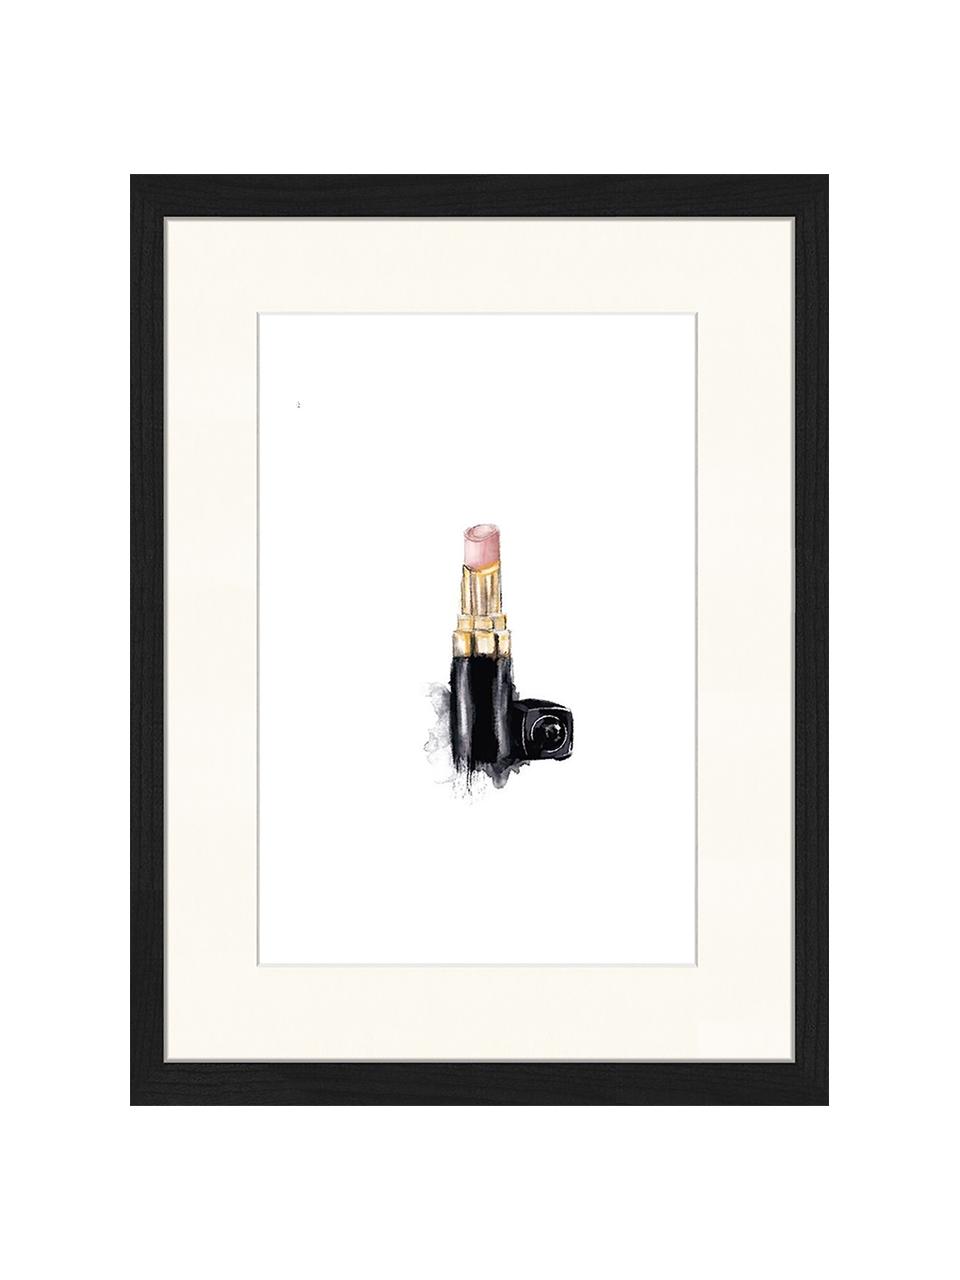 Gerahmter Digitaldruck Lipstick, Bild: Digitaldruck auf Papier, , Rahmen: Holz, lackiert, Front: Plexiglas, Mehrfarbig, 33 x 43 cm